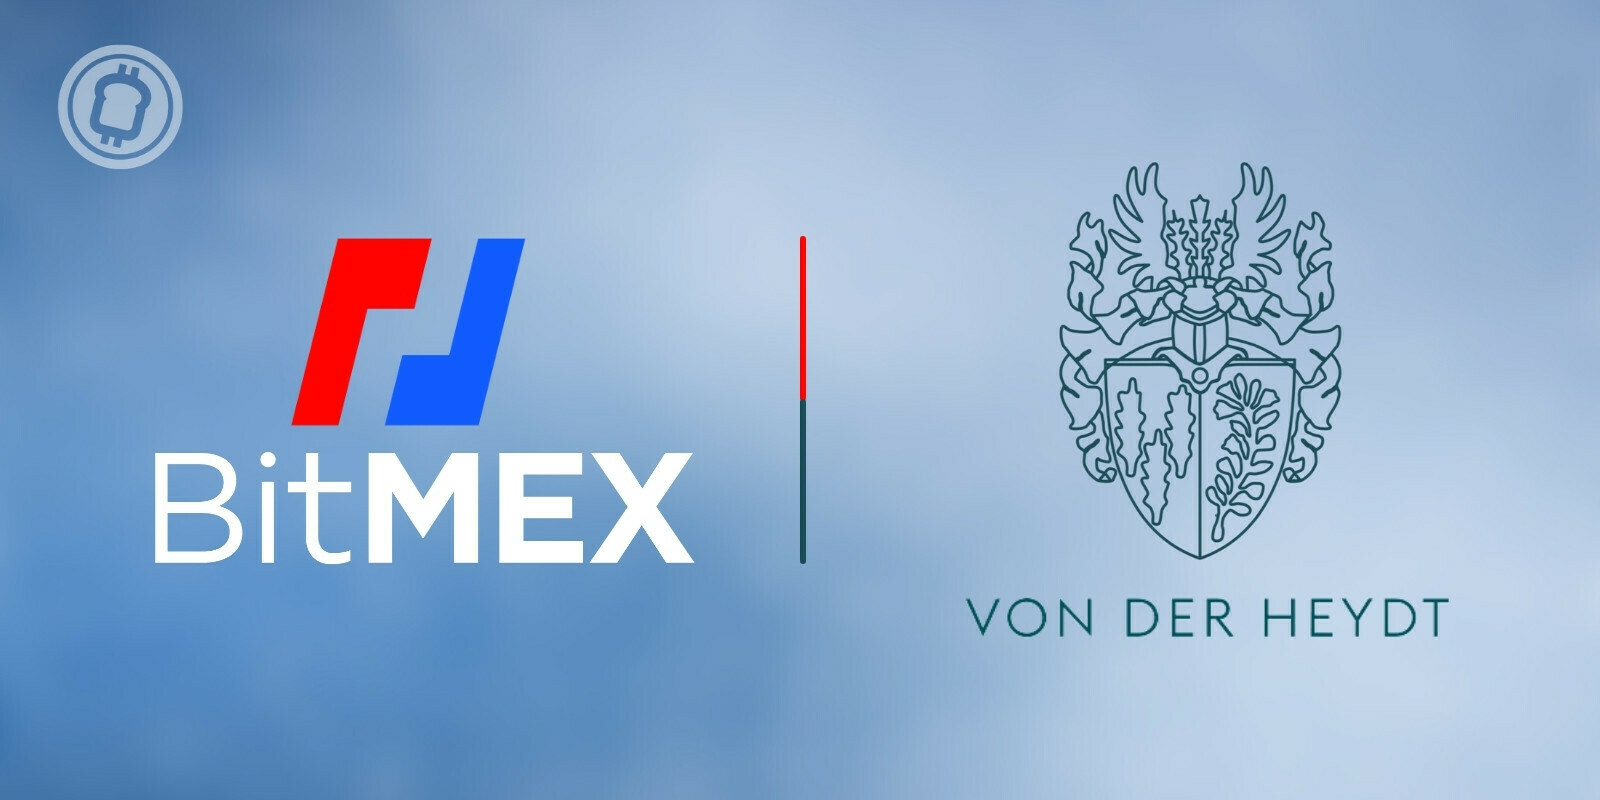 BitMEX prévoit d'acheter la Bankhaus von der Heydt, l'une des plus anciennes banques d'Europe